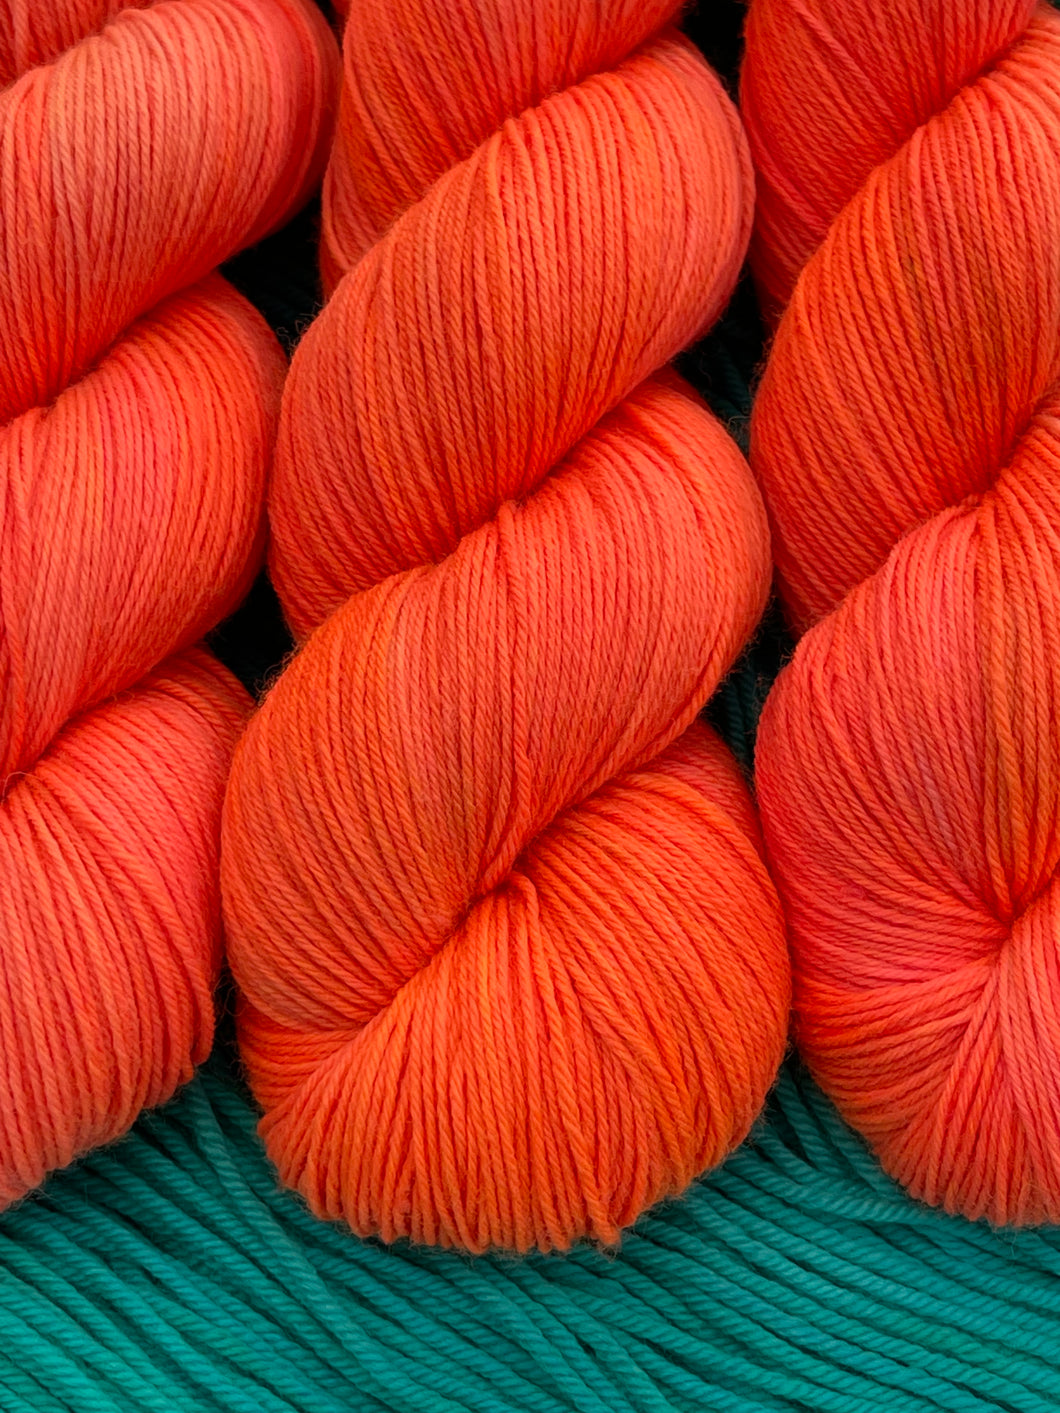 Tangy Tangerine - Superwash Merino & Nylon - Hand Dyed Neon Orange Yar –  Rainbow Fusions